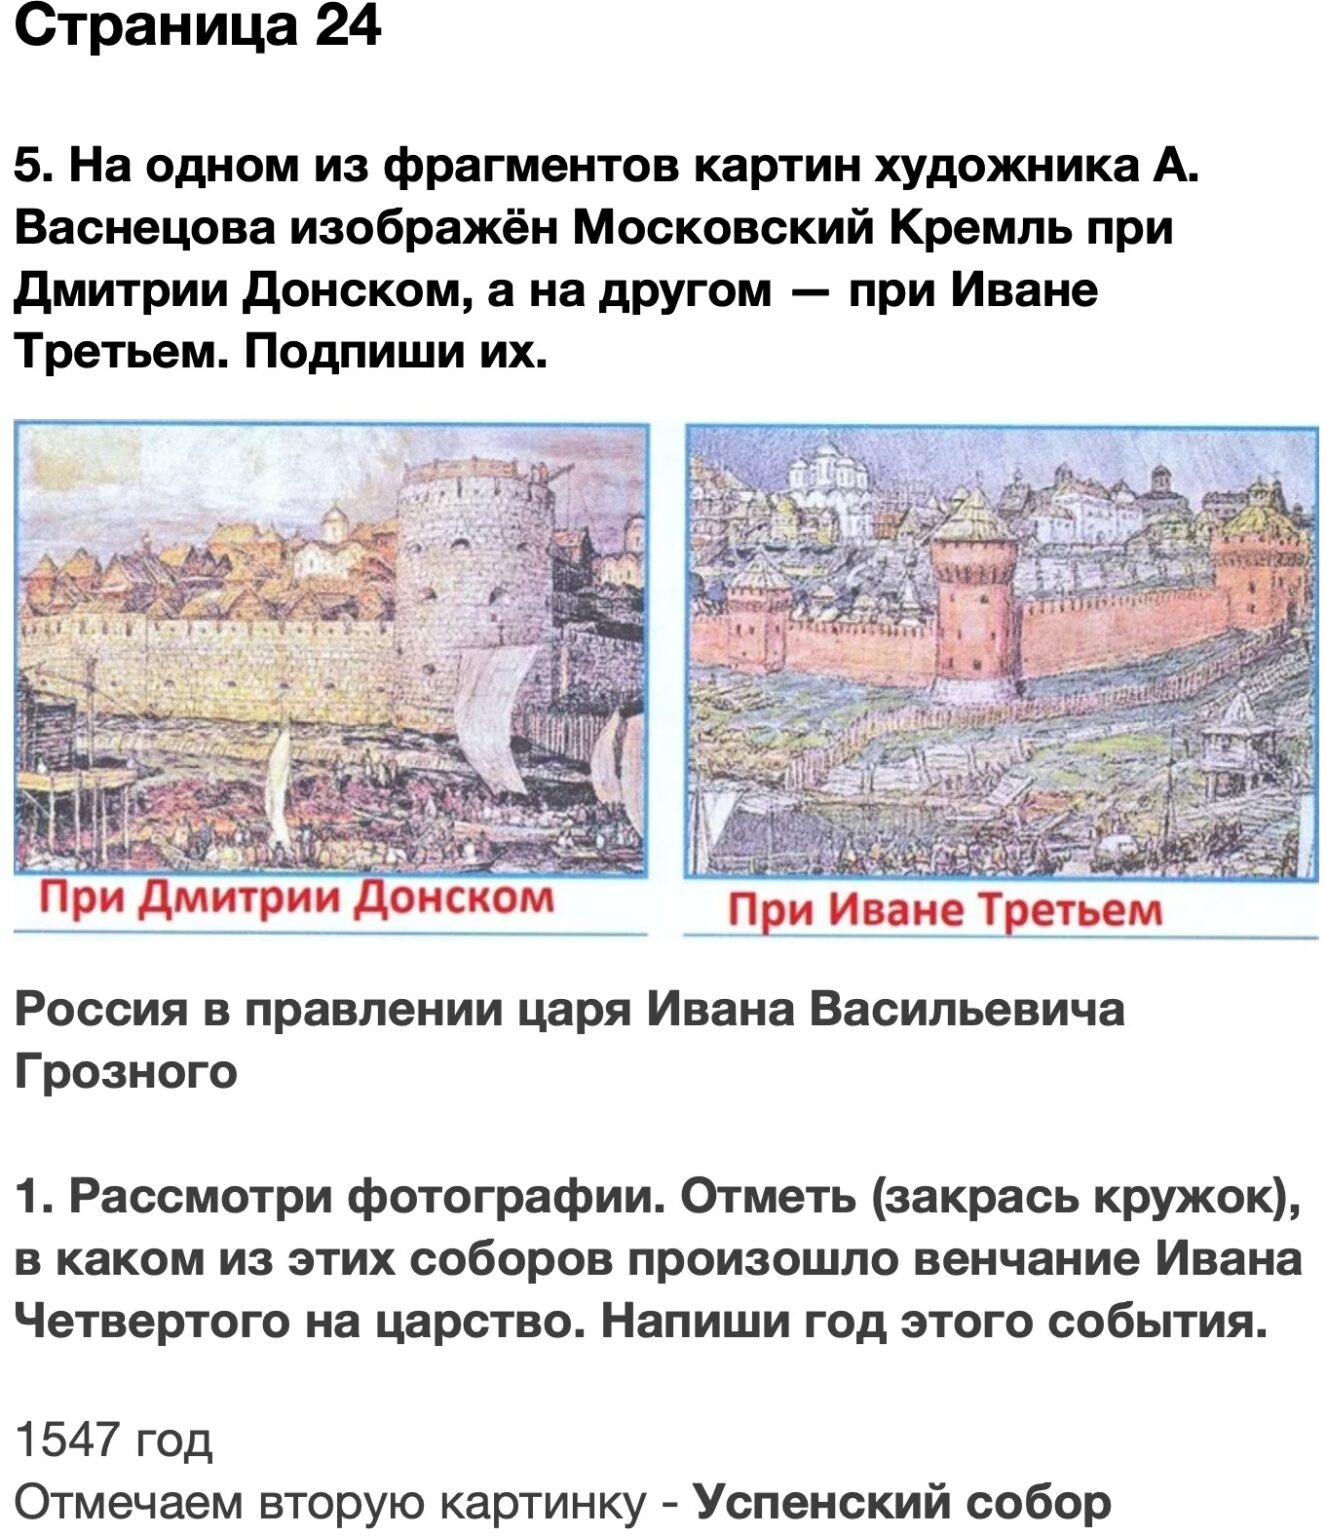 На одном фрагменте картин художника Васнецова изображен